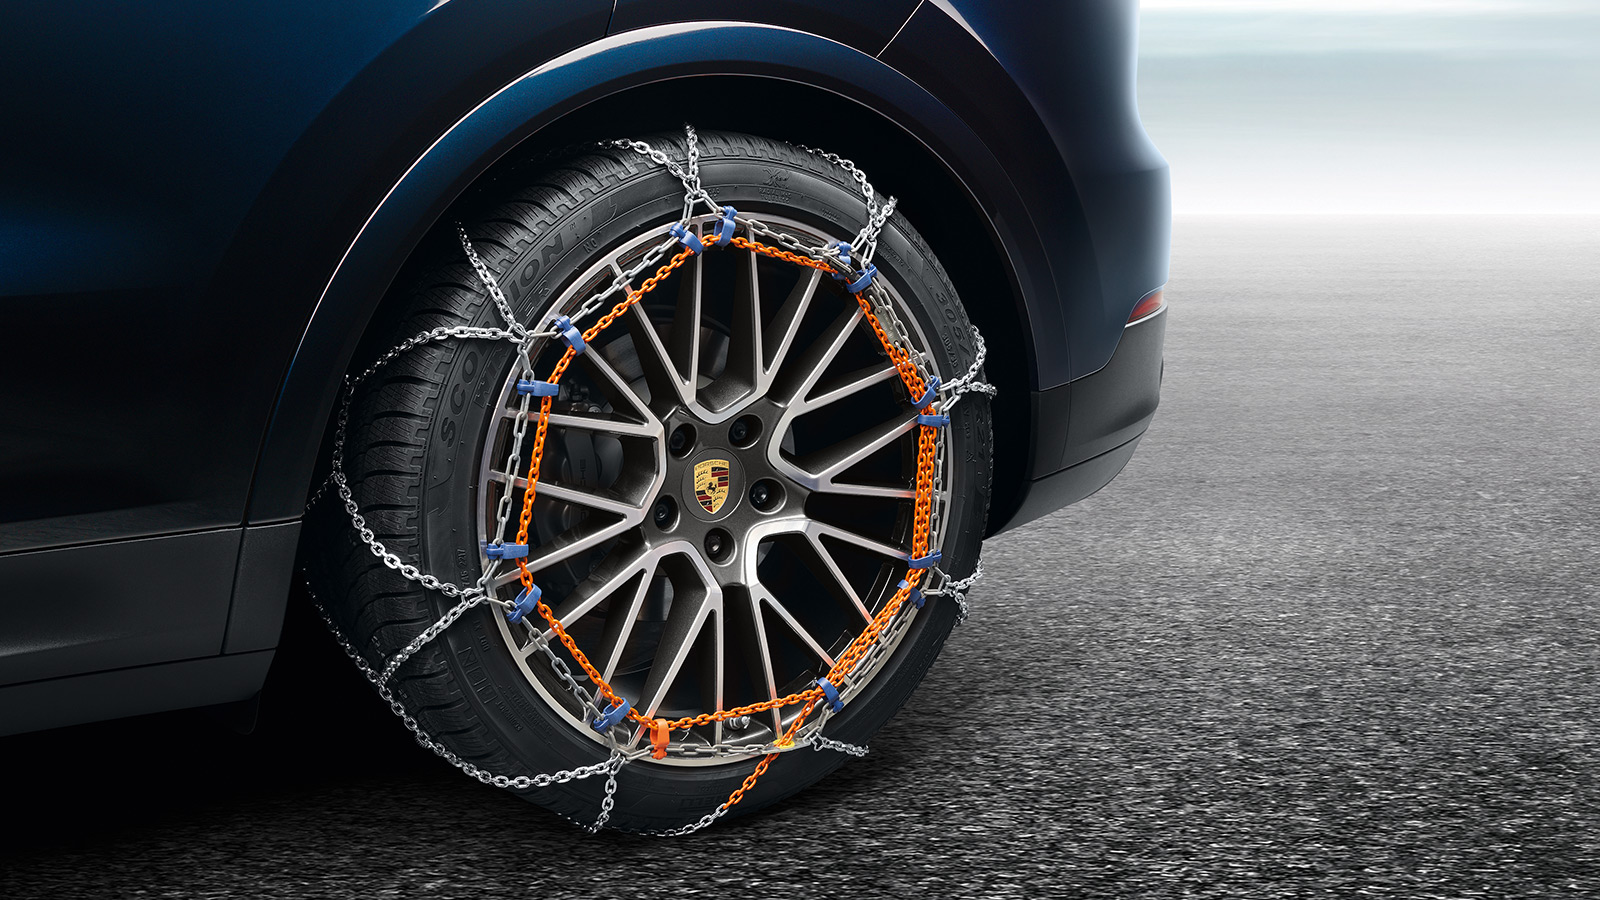 Porsche - Wheels and wheel accessories